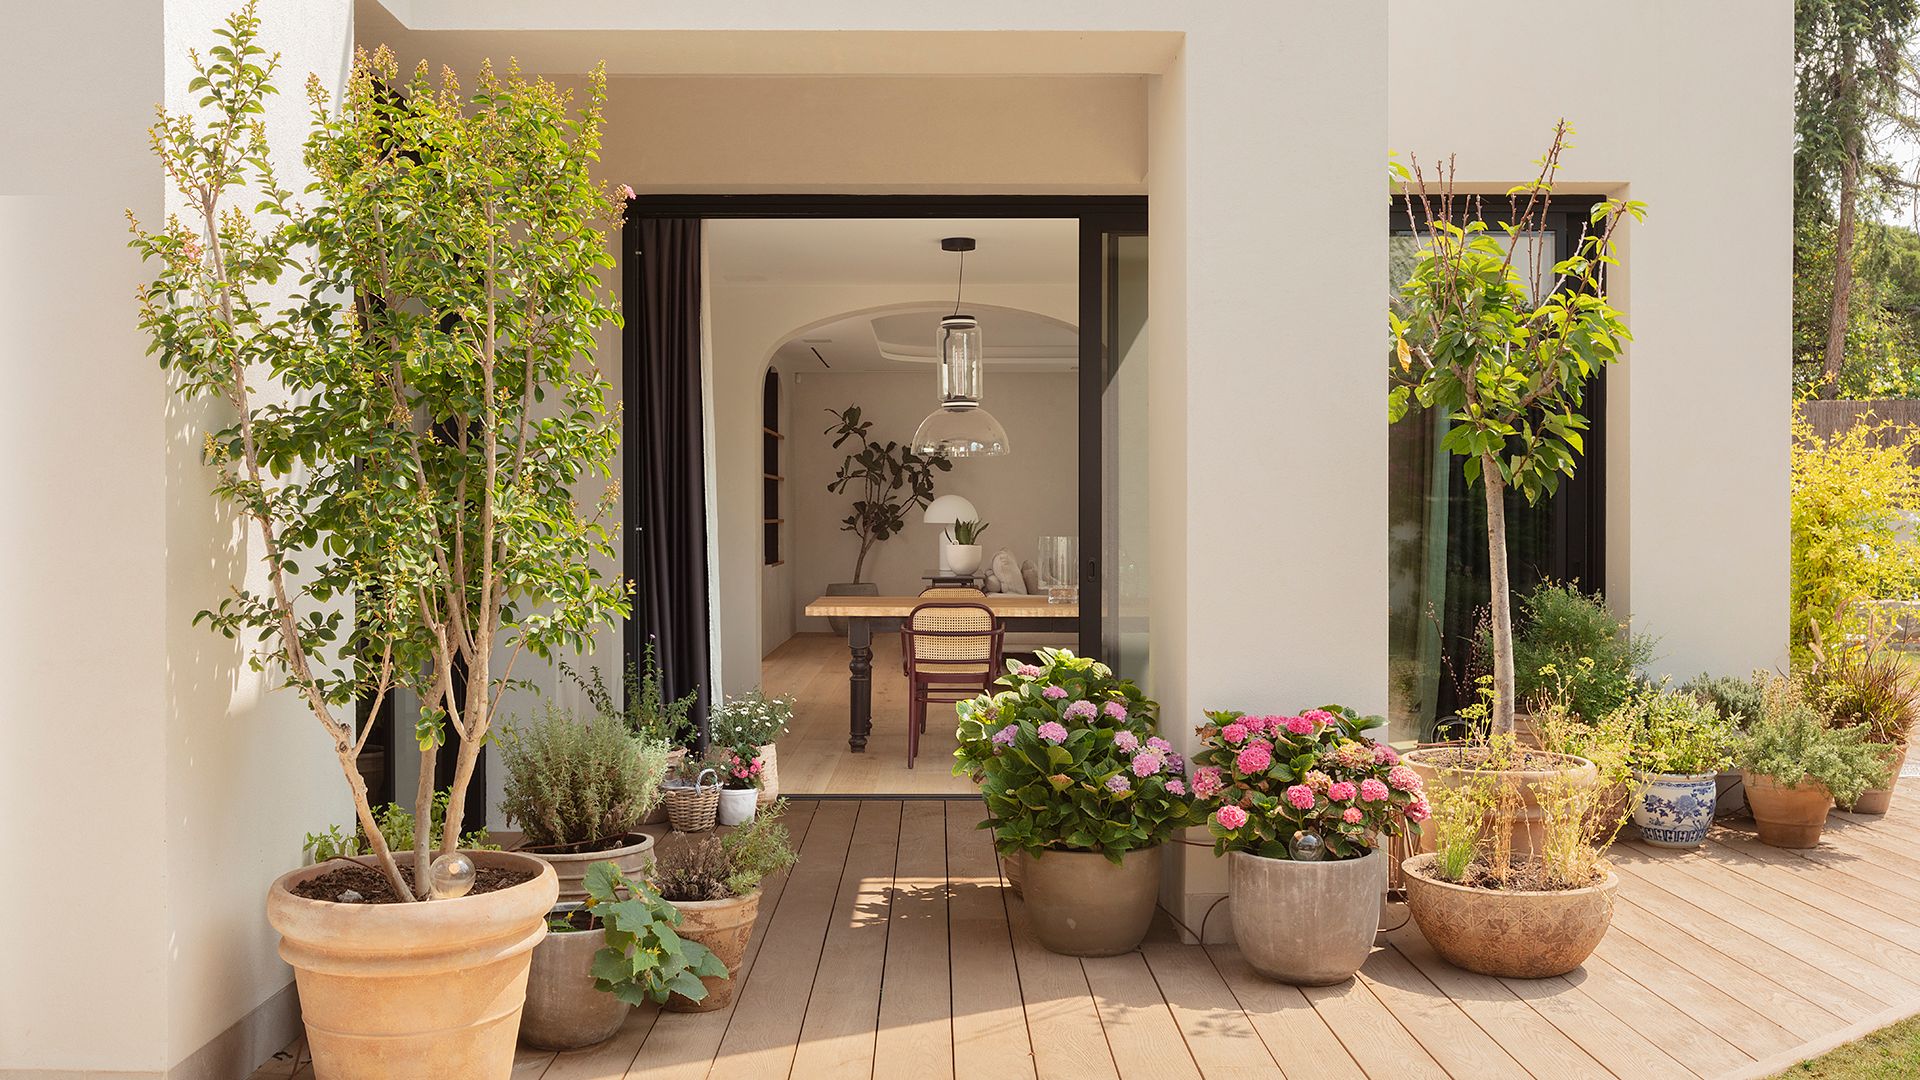 La reforma de esta casa en el barrio de Tres Torres de Barcelona consigue potenciar la luz y conectar los interiores con el jardín